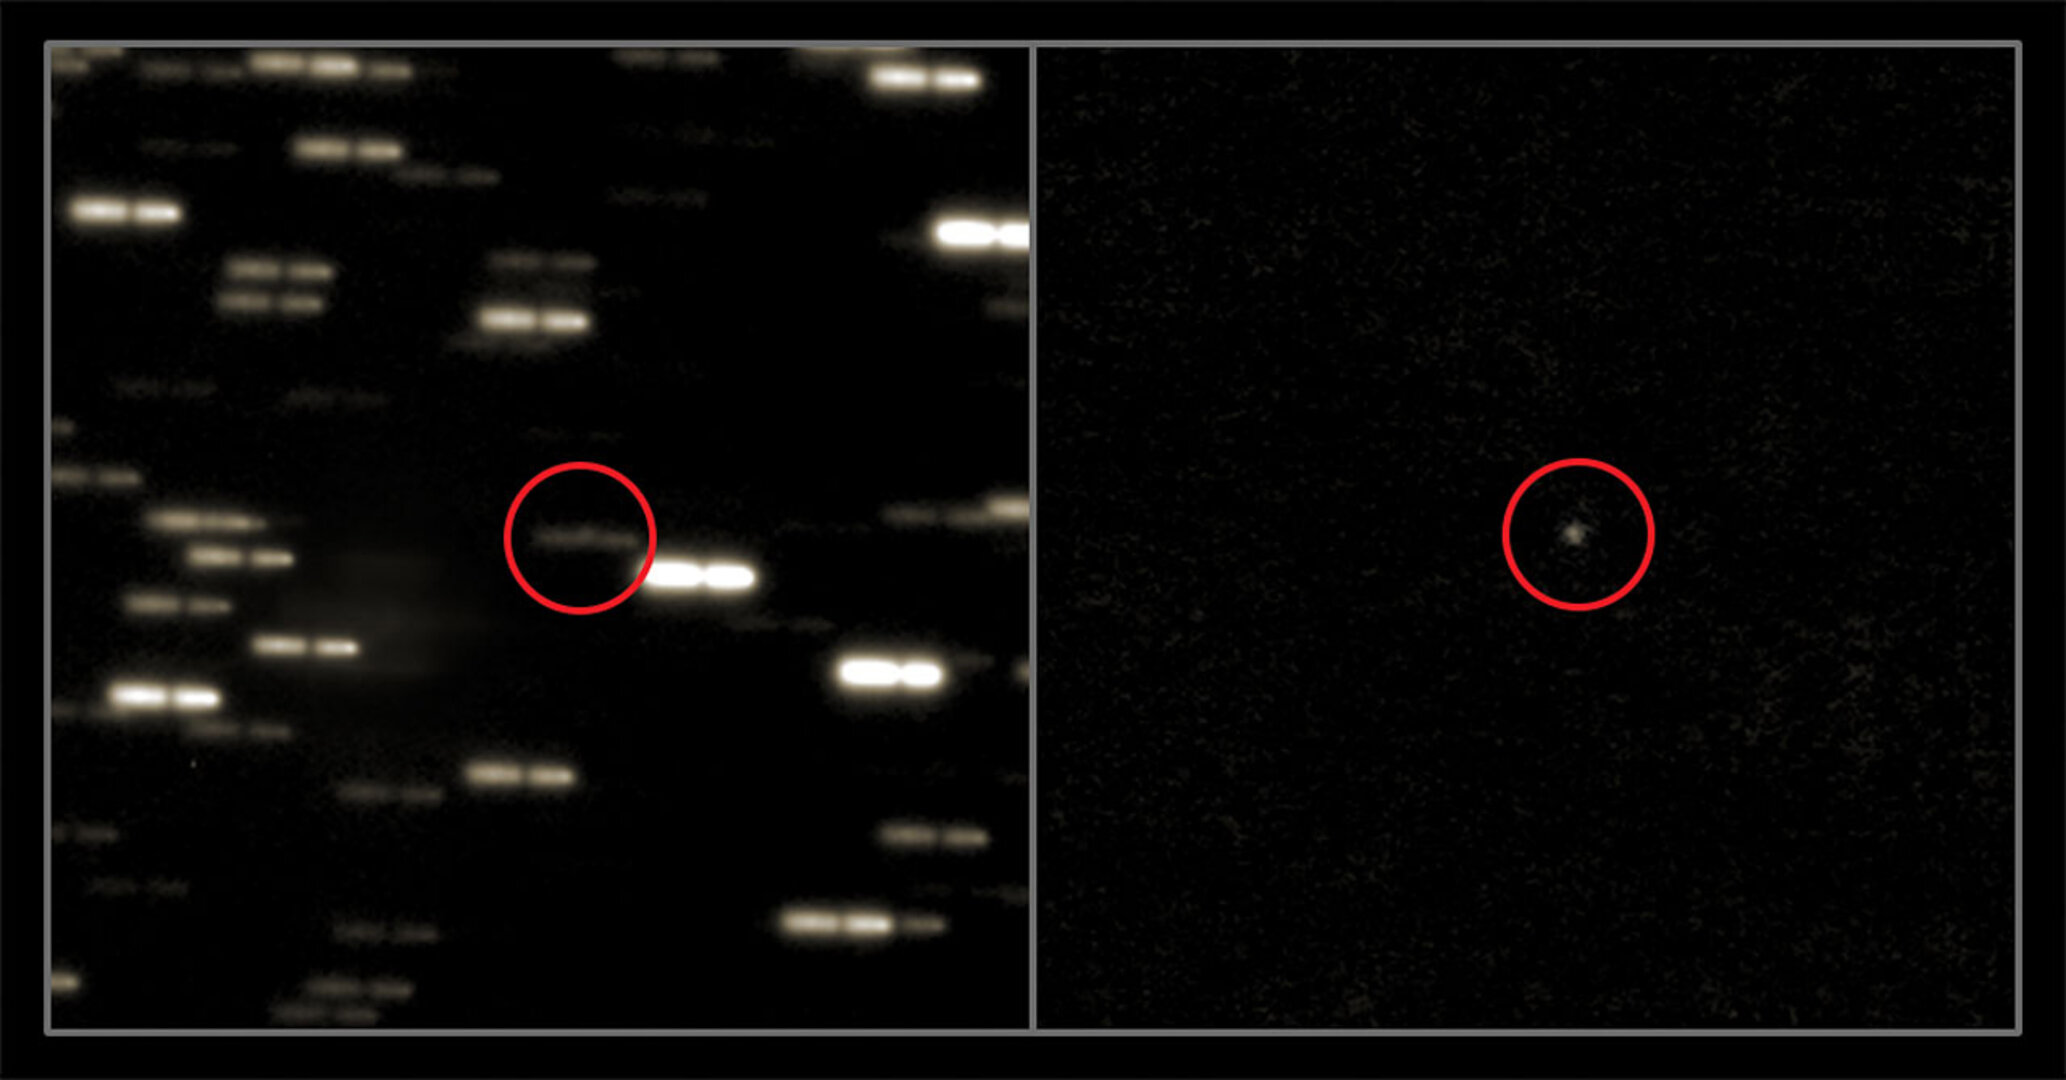 Komet 67P/Churyumov-Gerasimenko aufgenommen am 28. Februar 2014 mit Hilfe des Very Large Telescope.  Links: Um den Kometen sichtbar zu machen, überlagerten die Wissenschaftler mehrere Aufnahmen. Die Bilder wurden zudem um die Bewegung des Kometen verschoben. Die Sterne im Hintergrund erscheinen dadurch als breit verschmierte Striche.  Rechts: Durch Subtrahieren des Sternenhintergrundes wird der Komet sichtbar. 